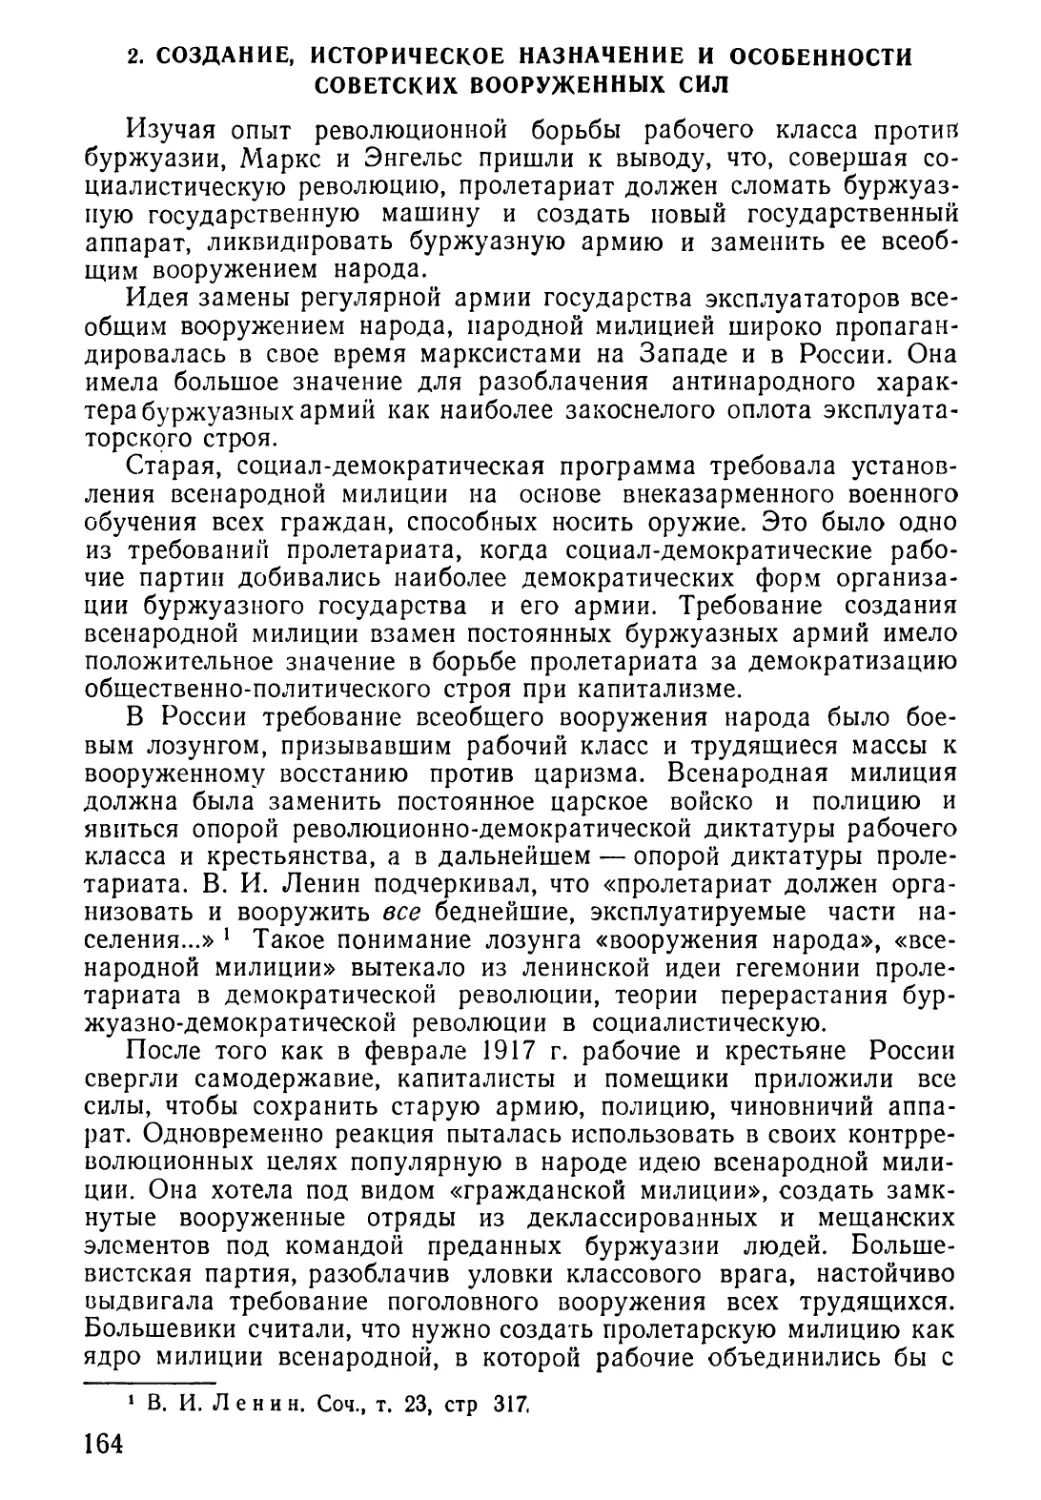 2. Создание, историческое назначение и особенности Советских Вооруженных Сил